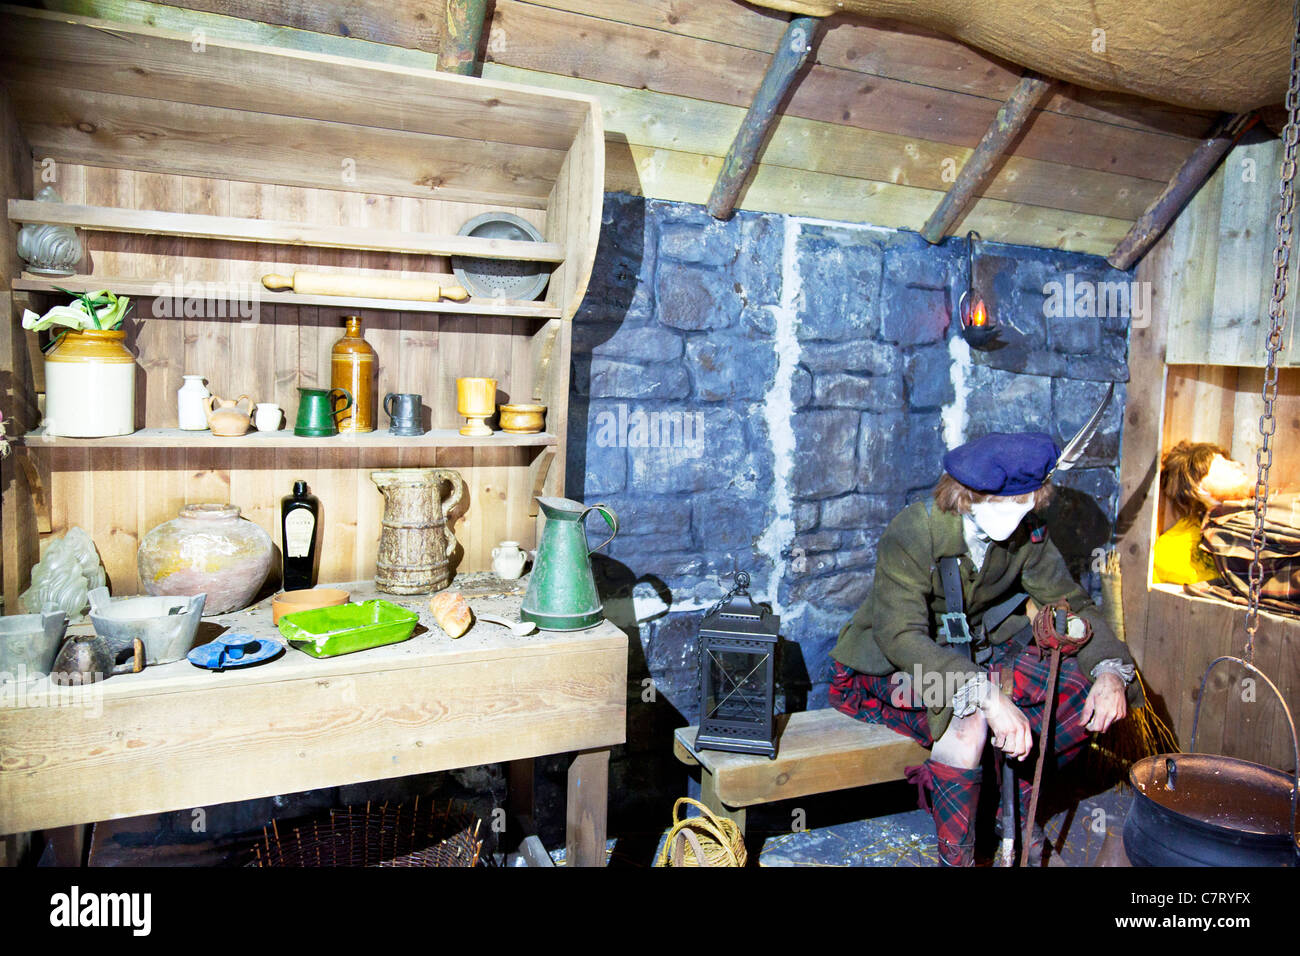 Typisch schottische Lebensart in der späten 13.Jh.-Szene im Alter von William Wallace Scotland Held Stockfoto